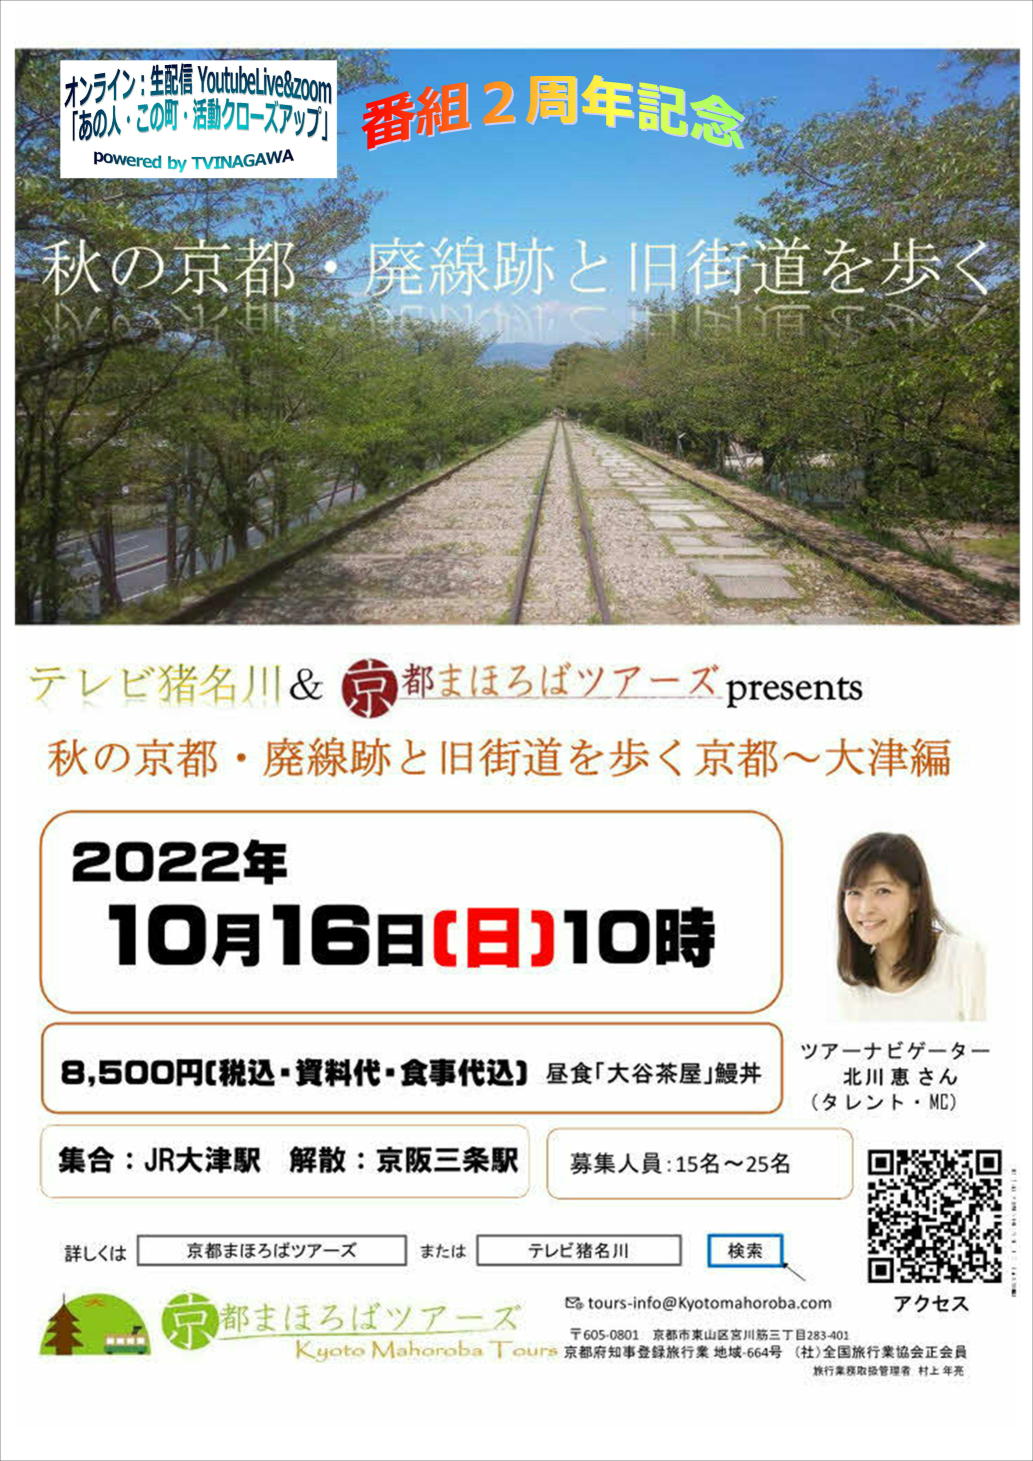 新到着 近鉄 大和八木駅 ご当地入場券 2022年3月31日終了 近畿日本鉄道